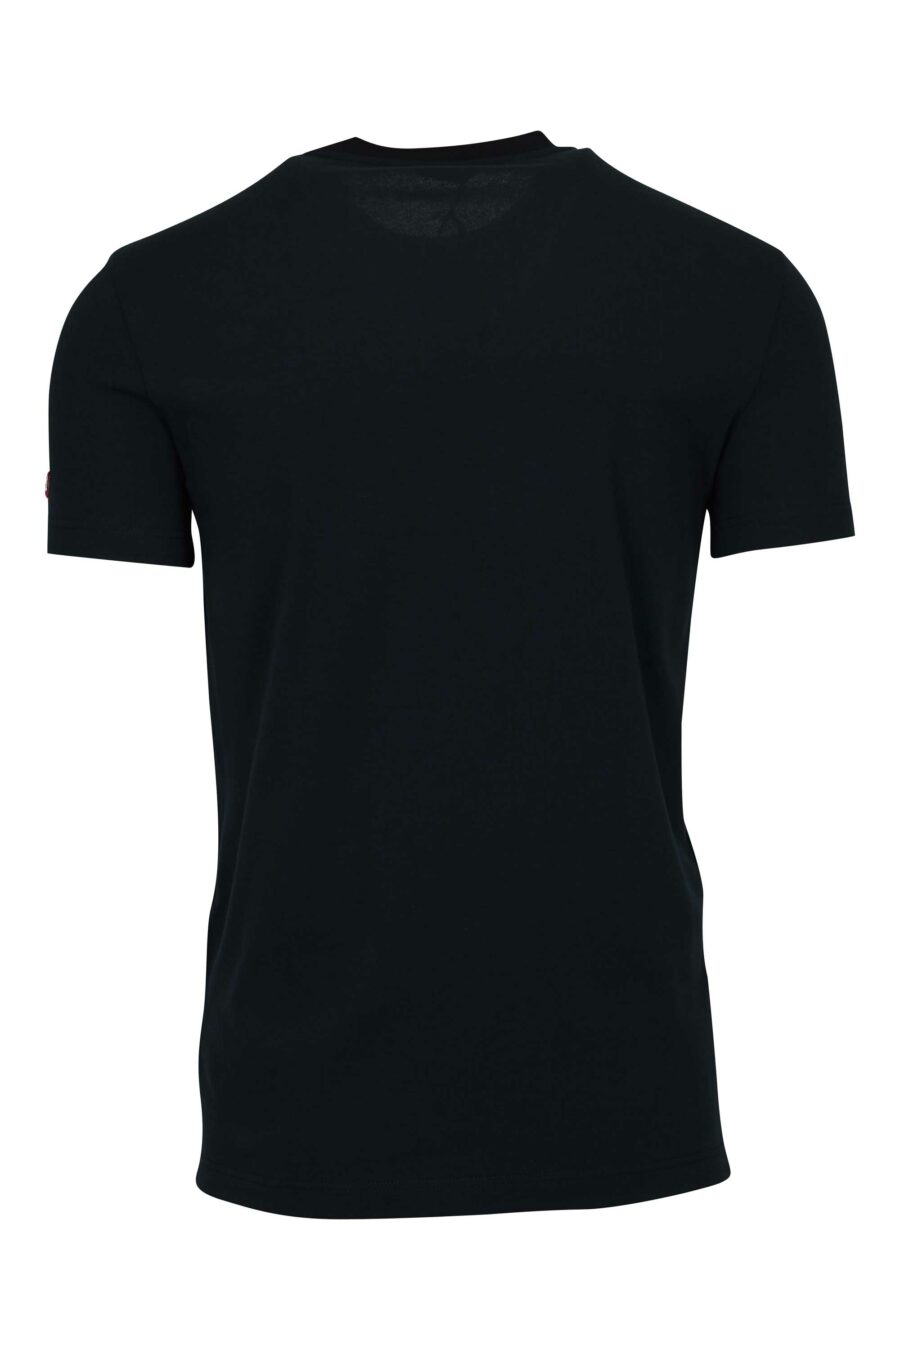 Schwarzes T-Shirt mit Logo-Etikett - 8032674811202 1